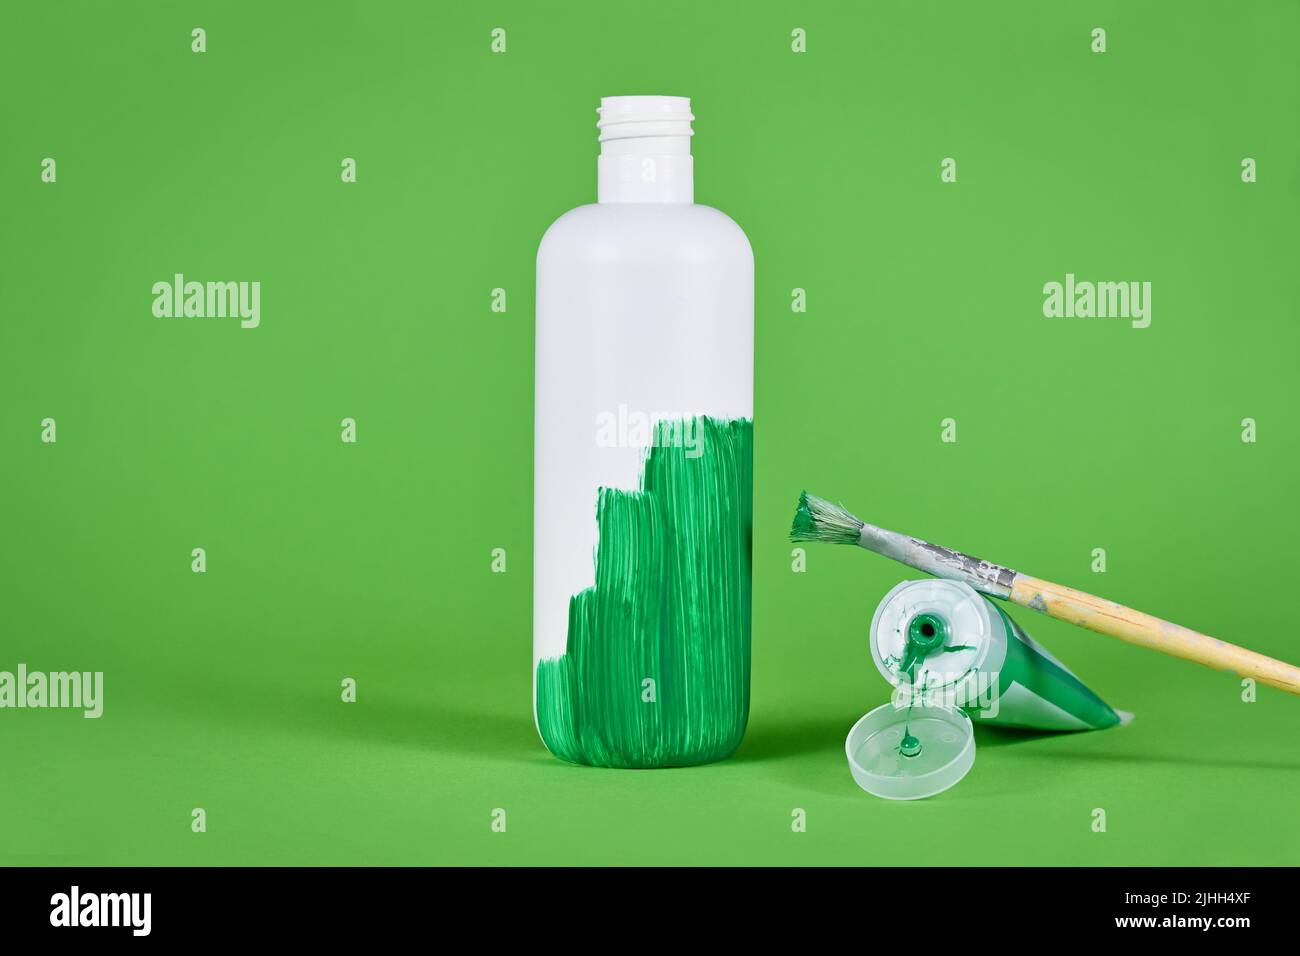 Greenwashing-Konzept mit weißer Plastikflasche, die grün lackiert wird Stockfoto